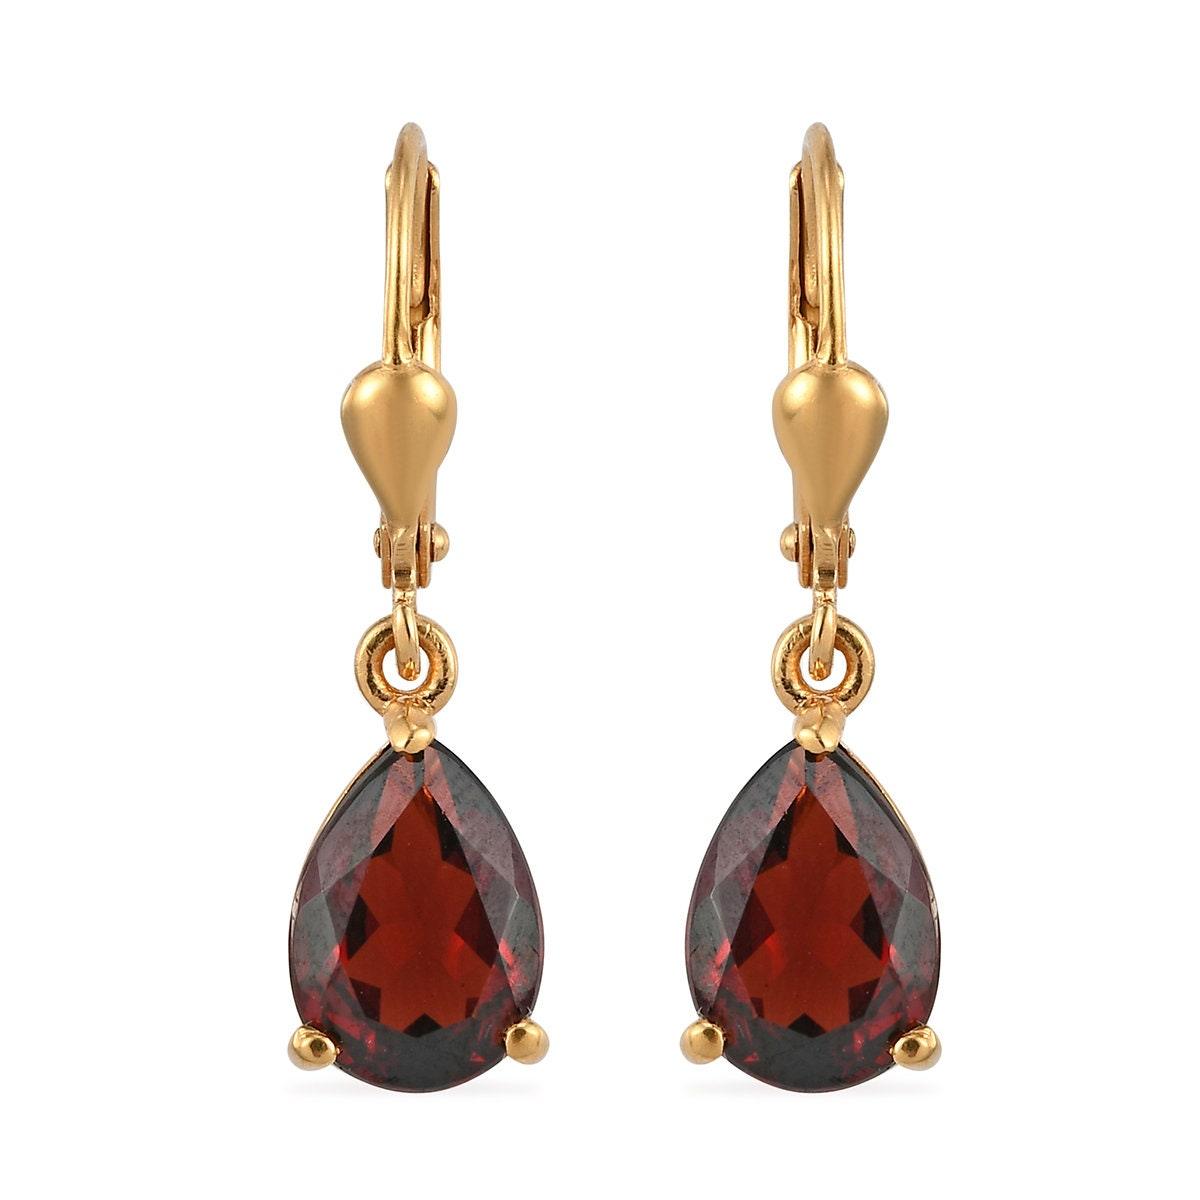 Red Garnet dangle earrings , January birthstone , 925 Sterling Silver , Garnet Lever back Earring, Teardrop Earrings by Inspiring Jewellery - Inspiring Jewellery